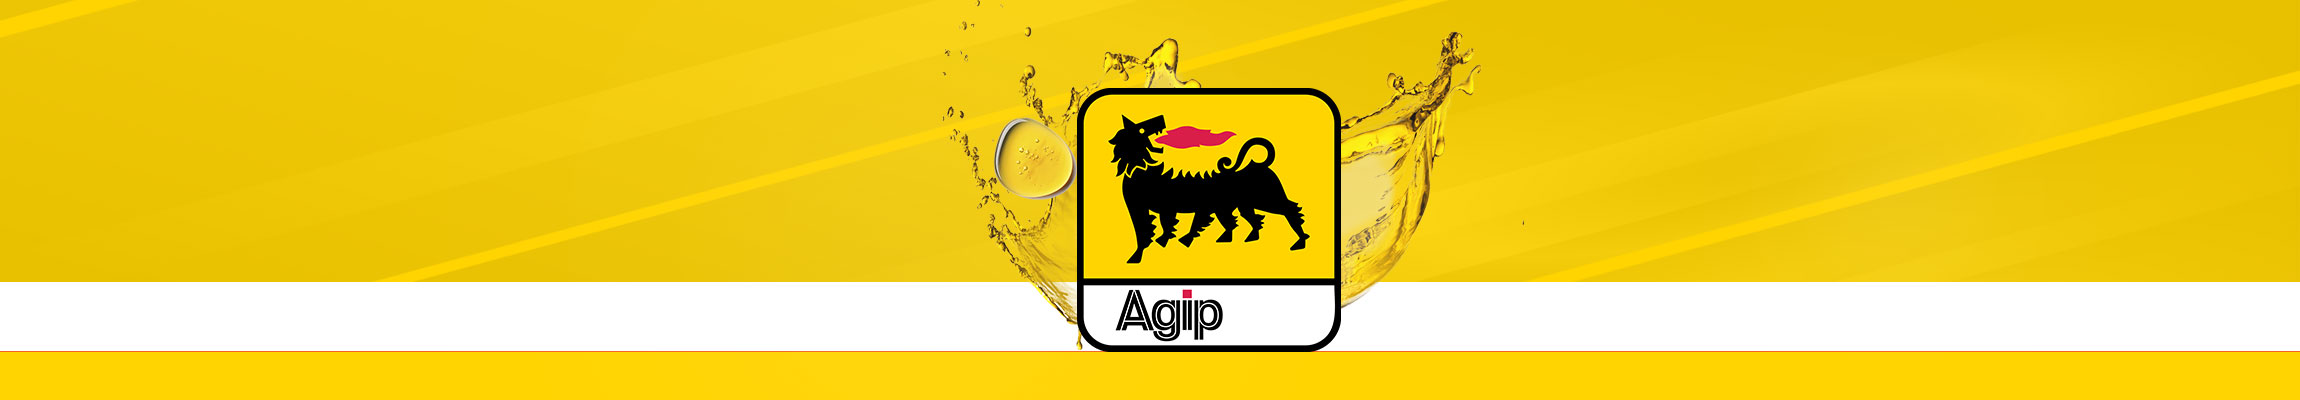 شرکت آجیپ Agip